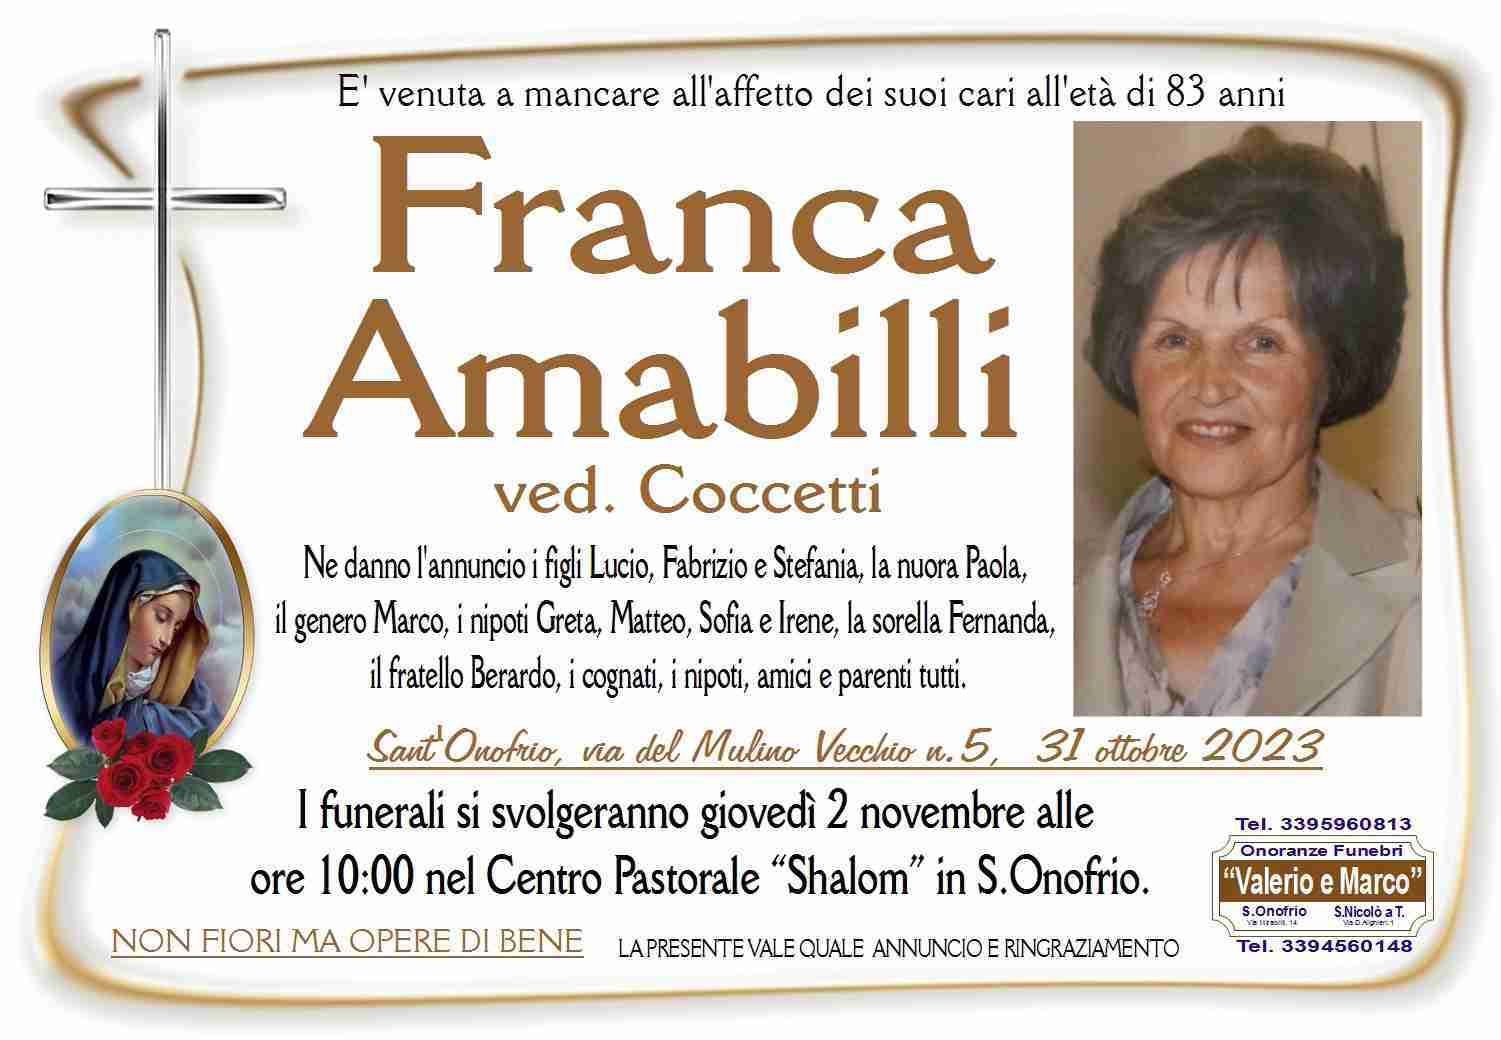 Franca Amabilli